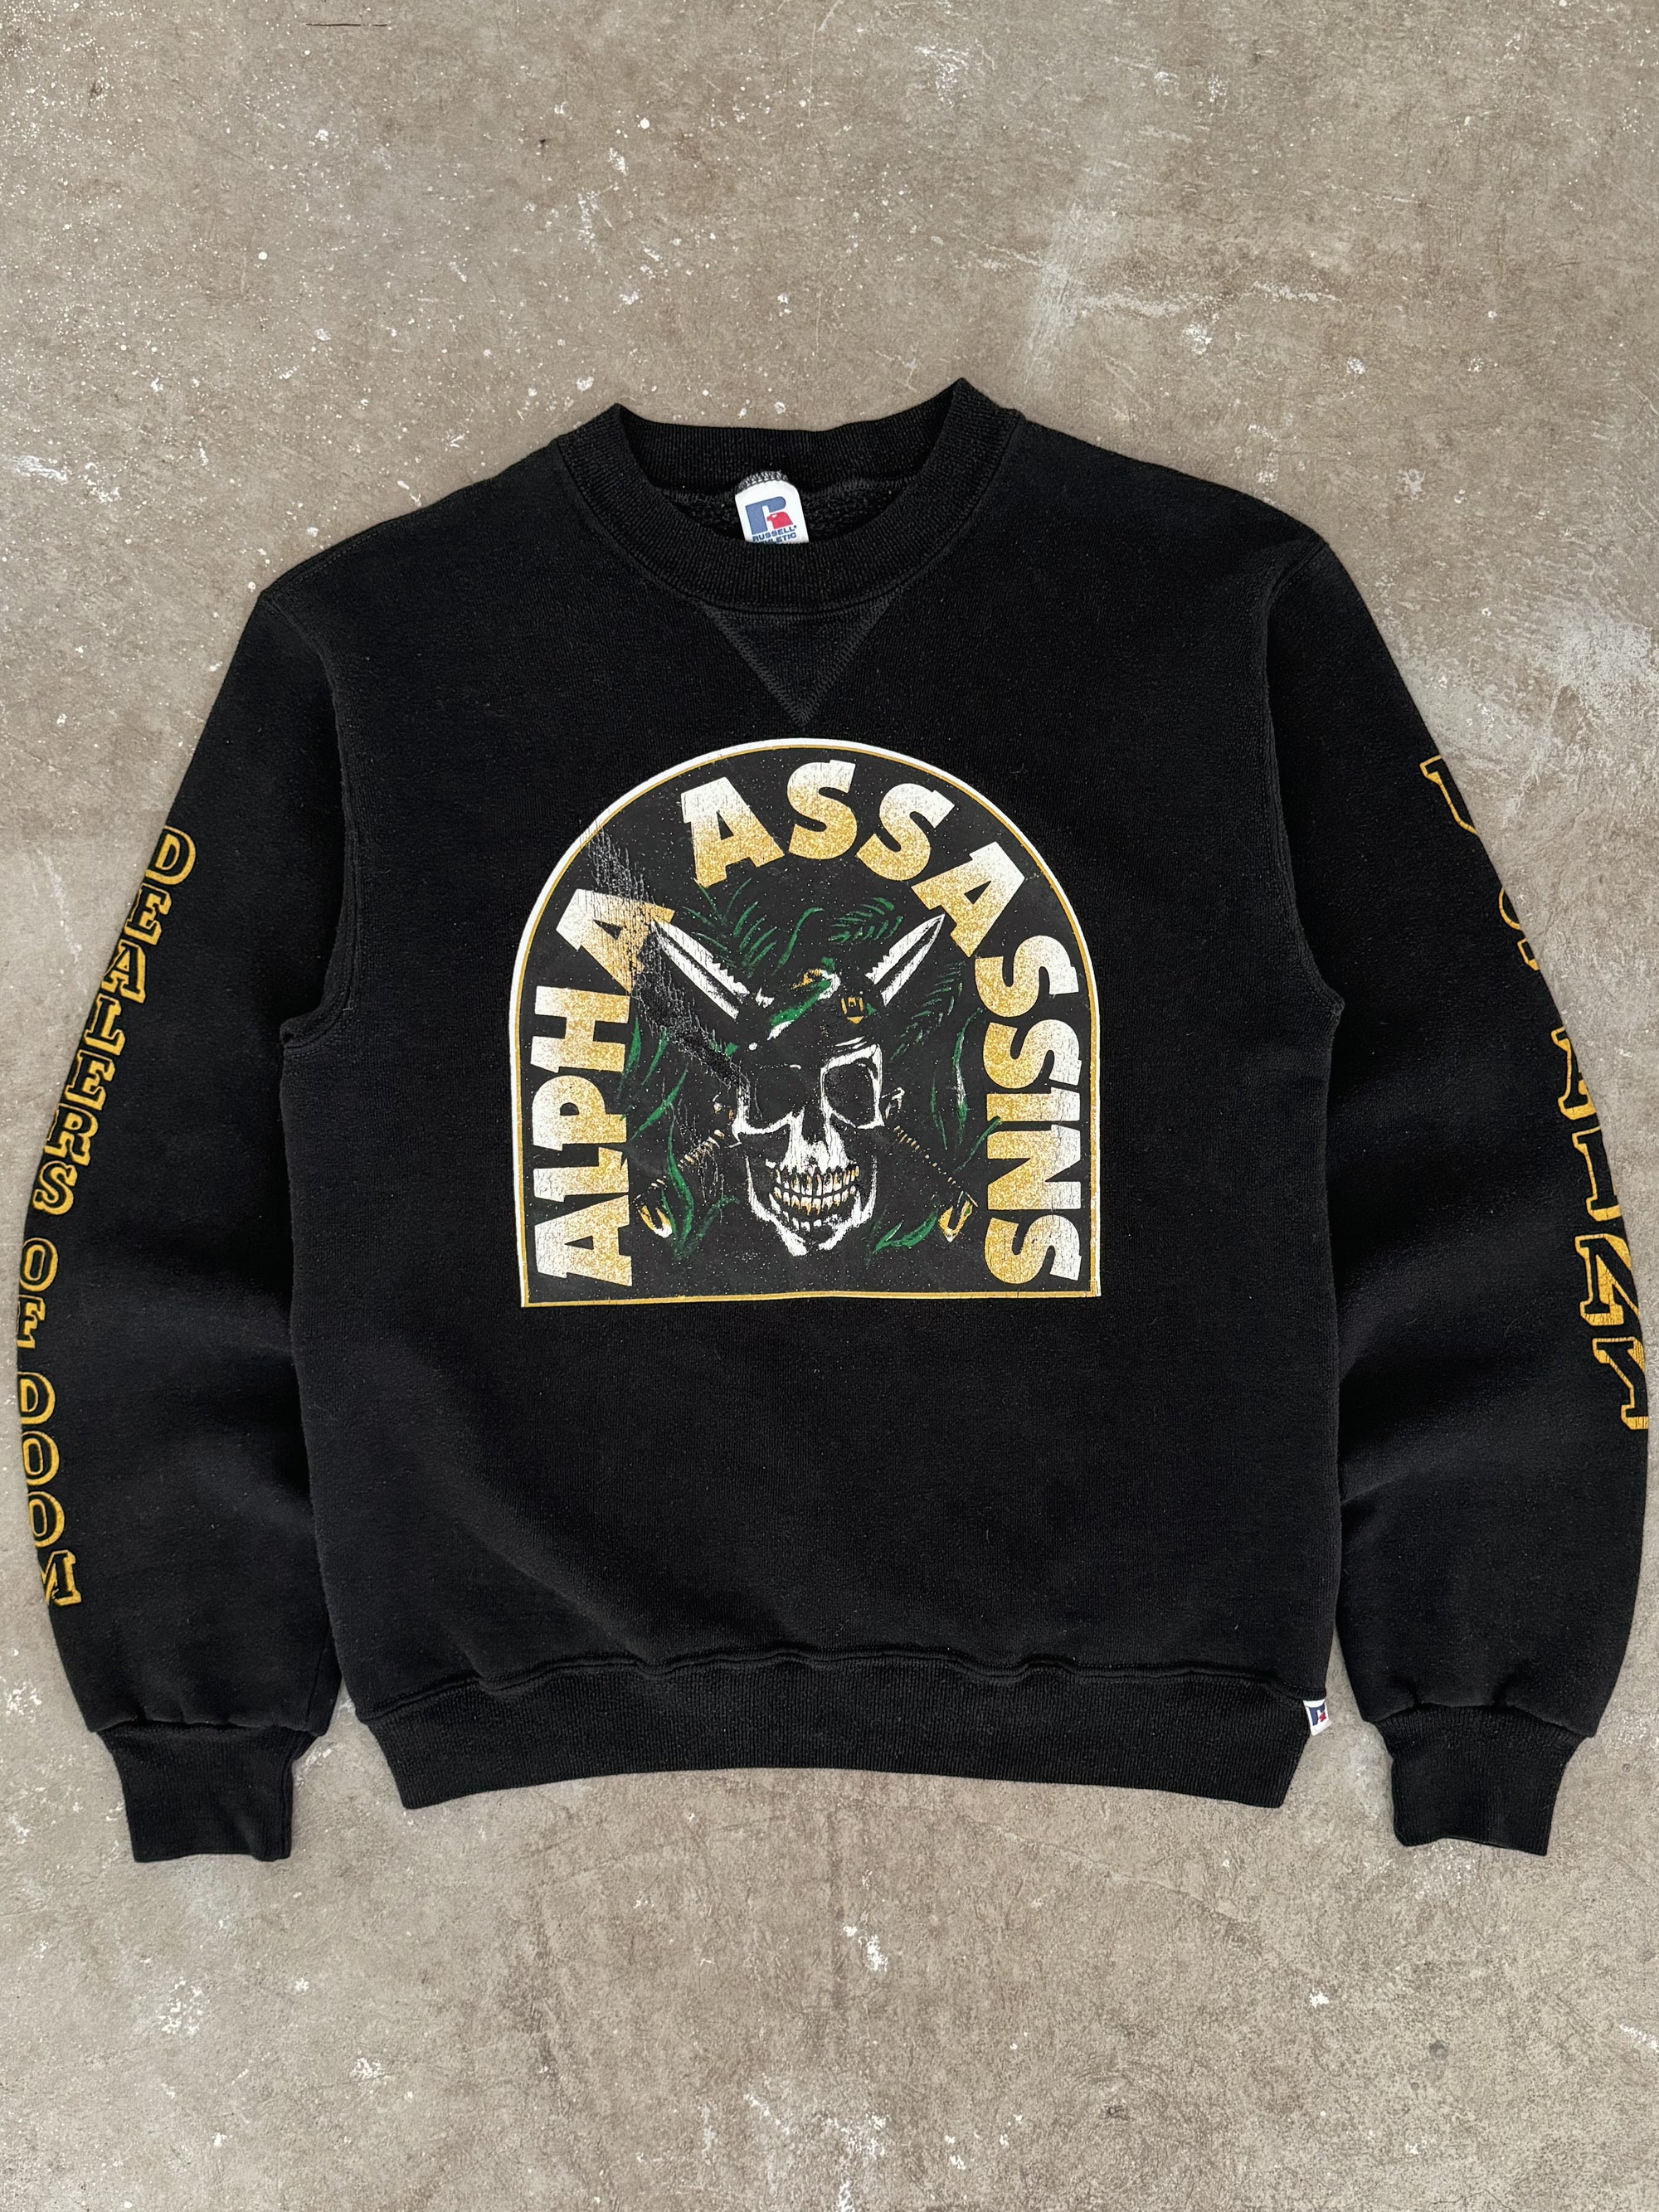 1980s Russell "Alpha Assassins" Sweatshirt (XS/S)